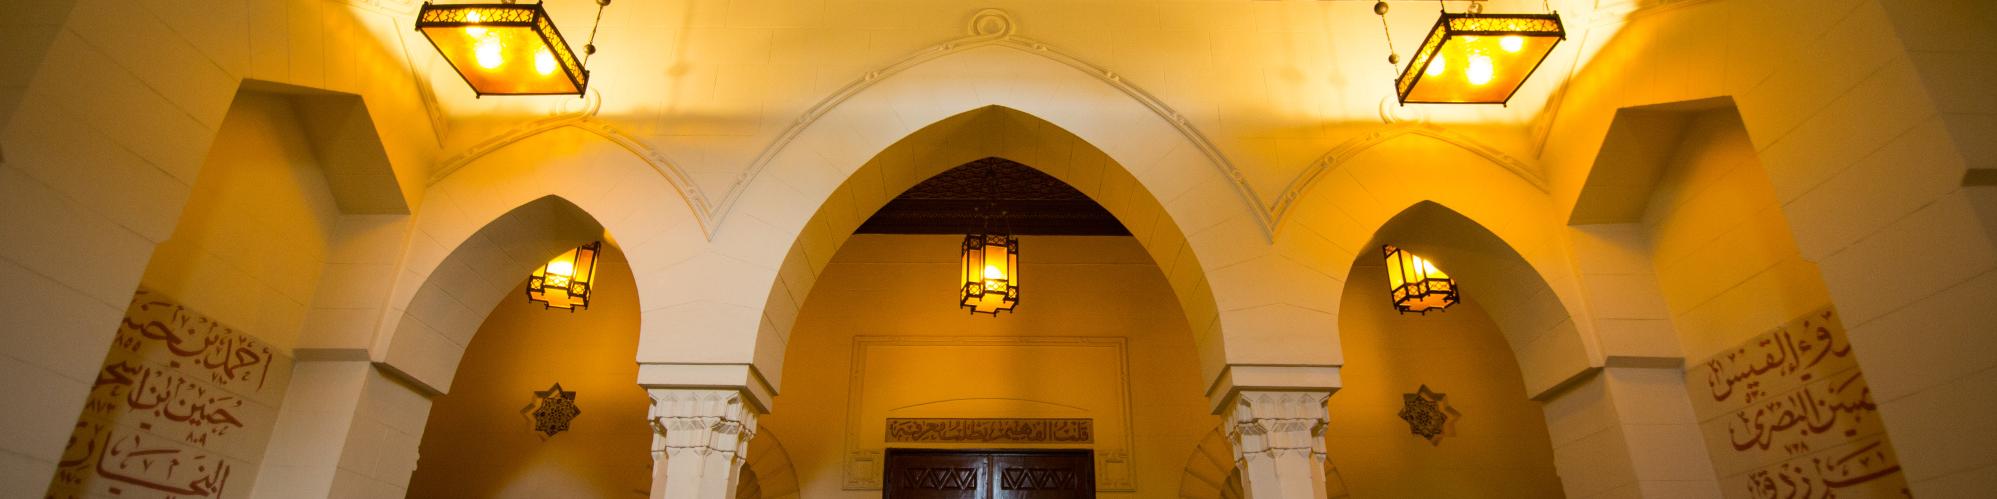 Islamic Arch